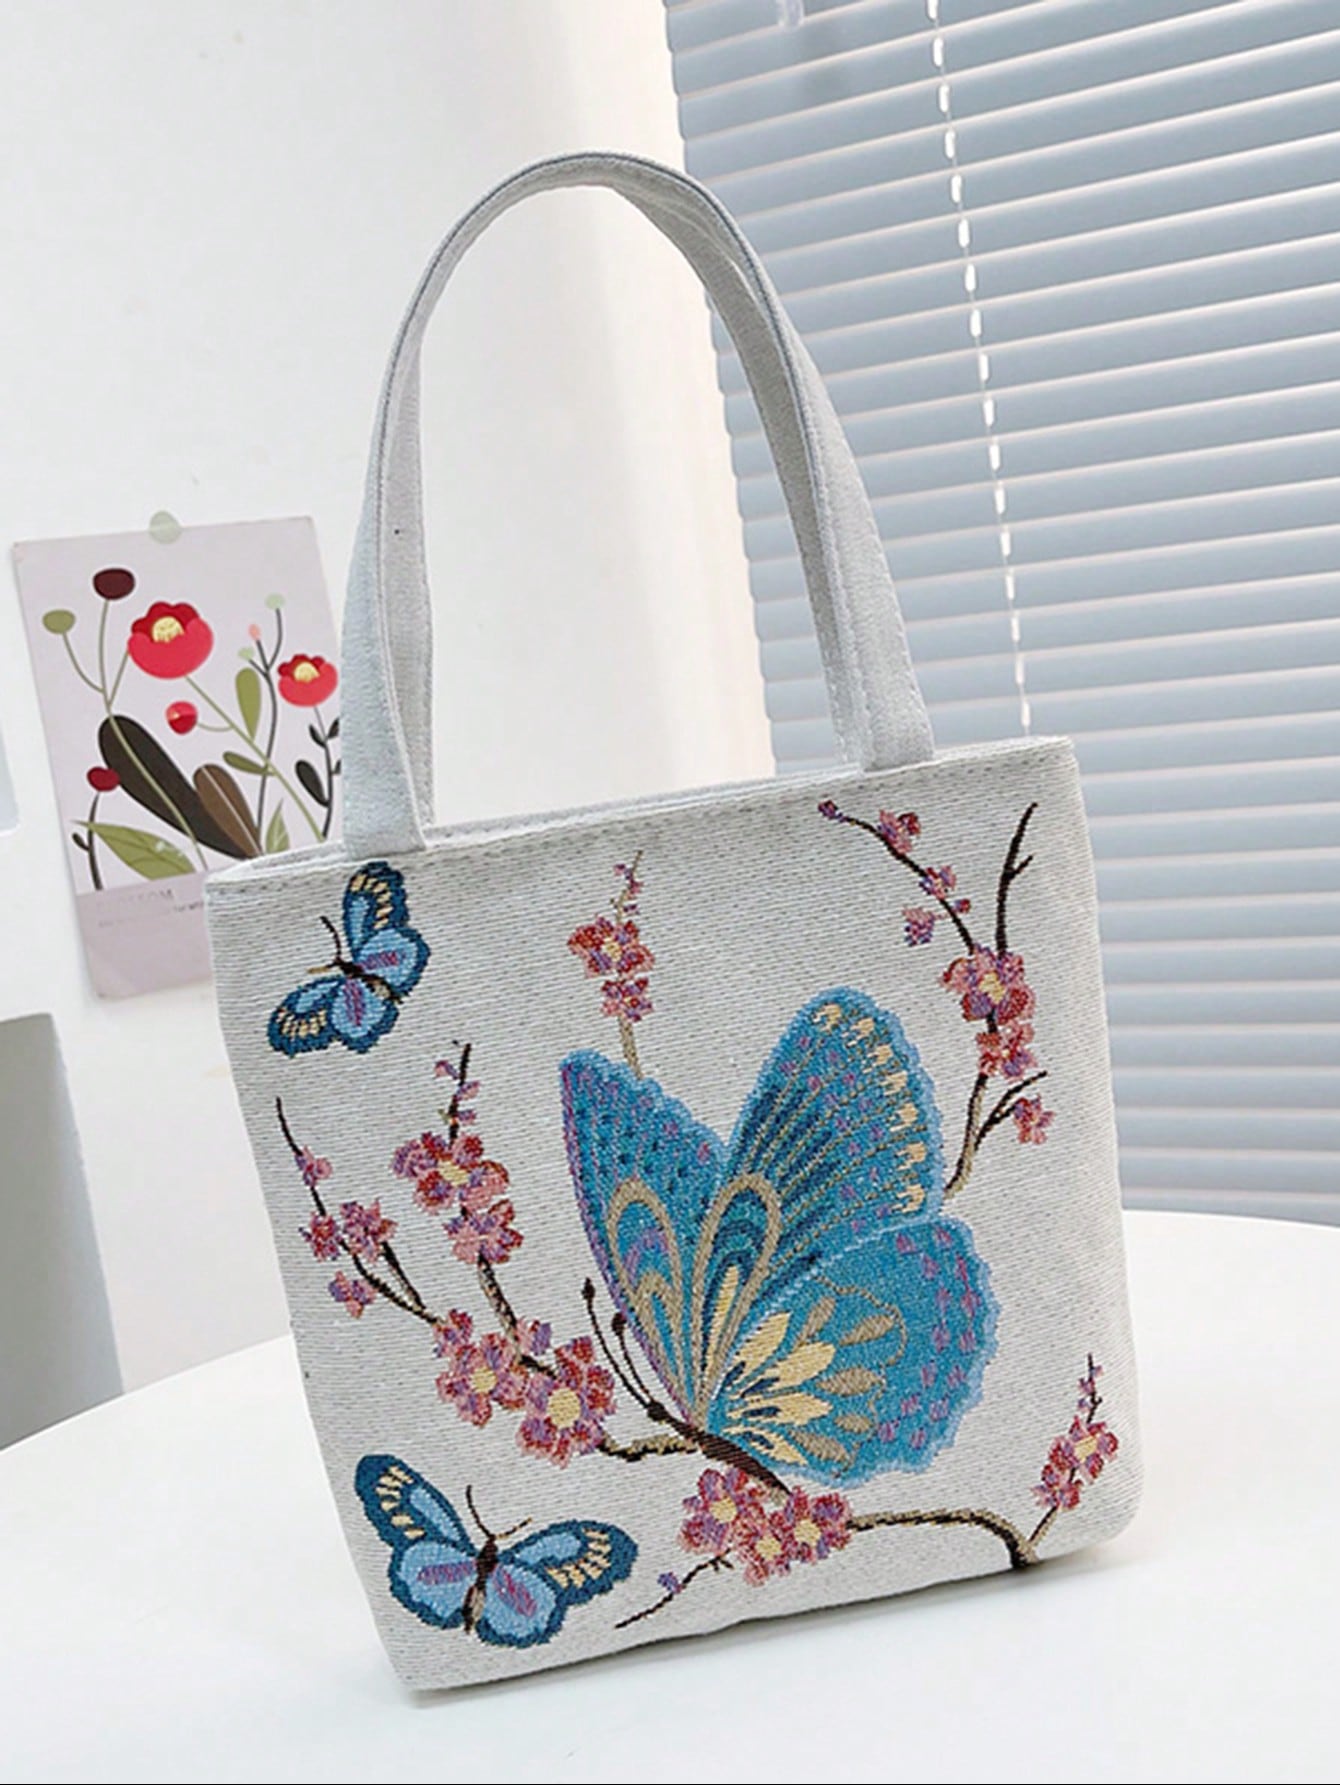 Квадратная сумка с рисунком бабочки Маленькая сумка через плечо с двойной ручкой, многоцветный